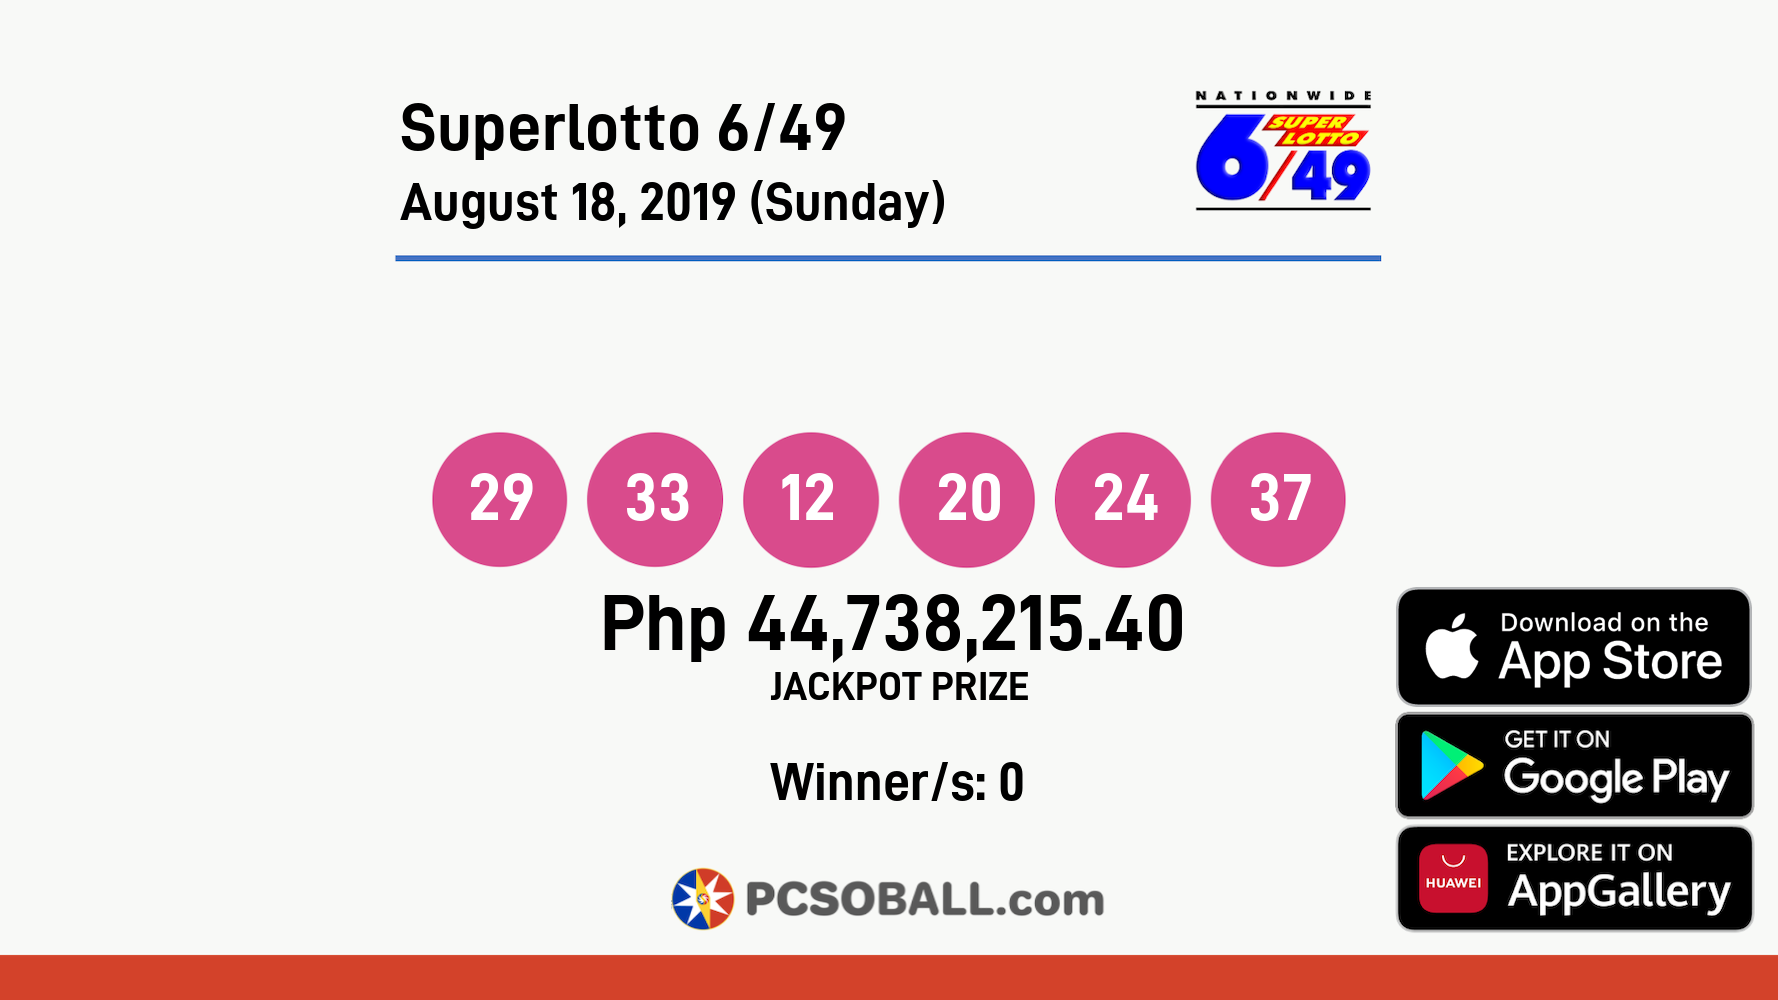 Superlotto 6/49 August 18, 2019 (Sunday) Result